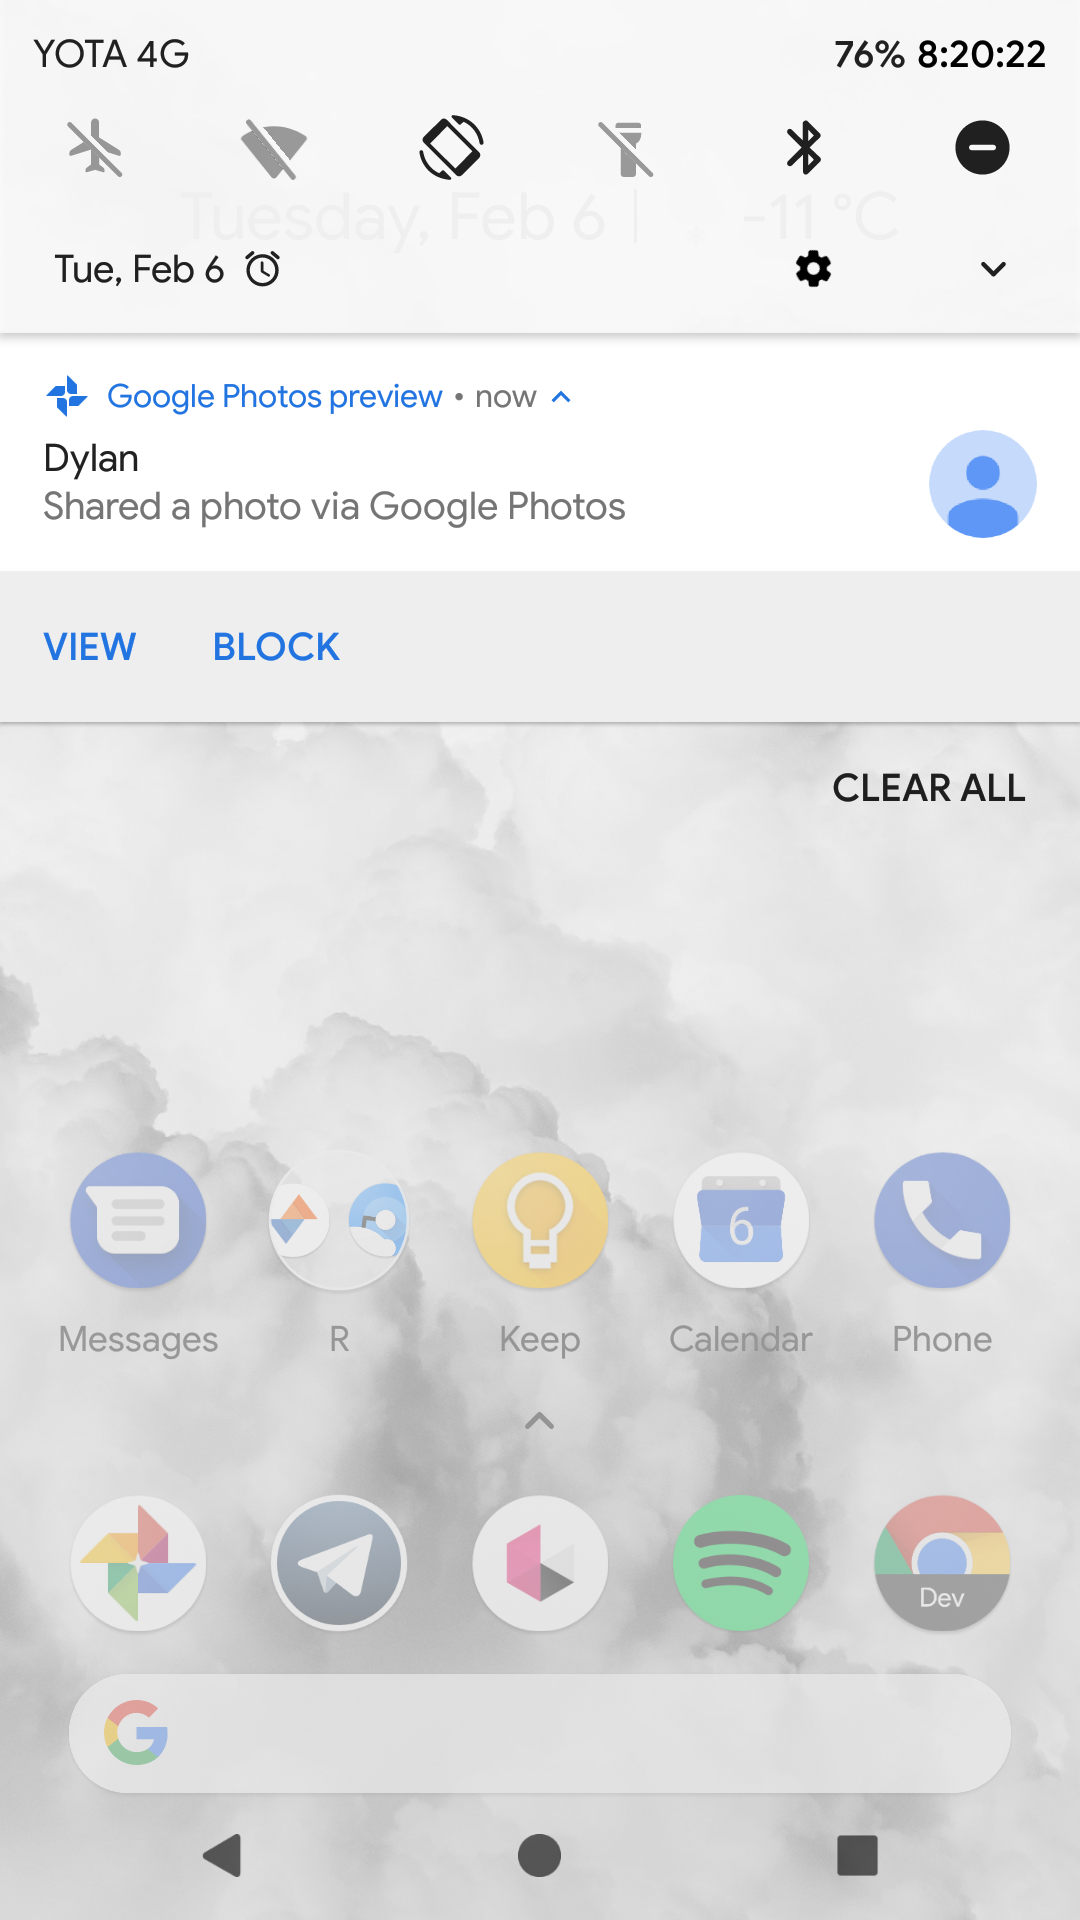 Previsualizar imágenes de Google Fotos sin tener la aplicación instalada